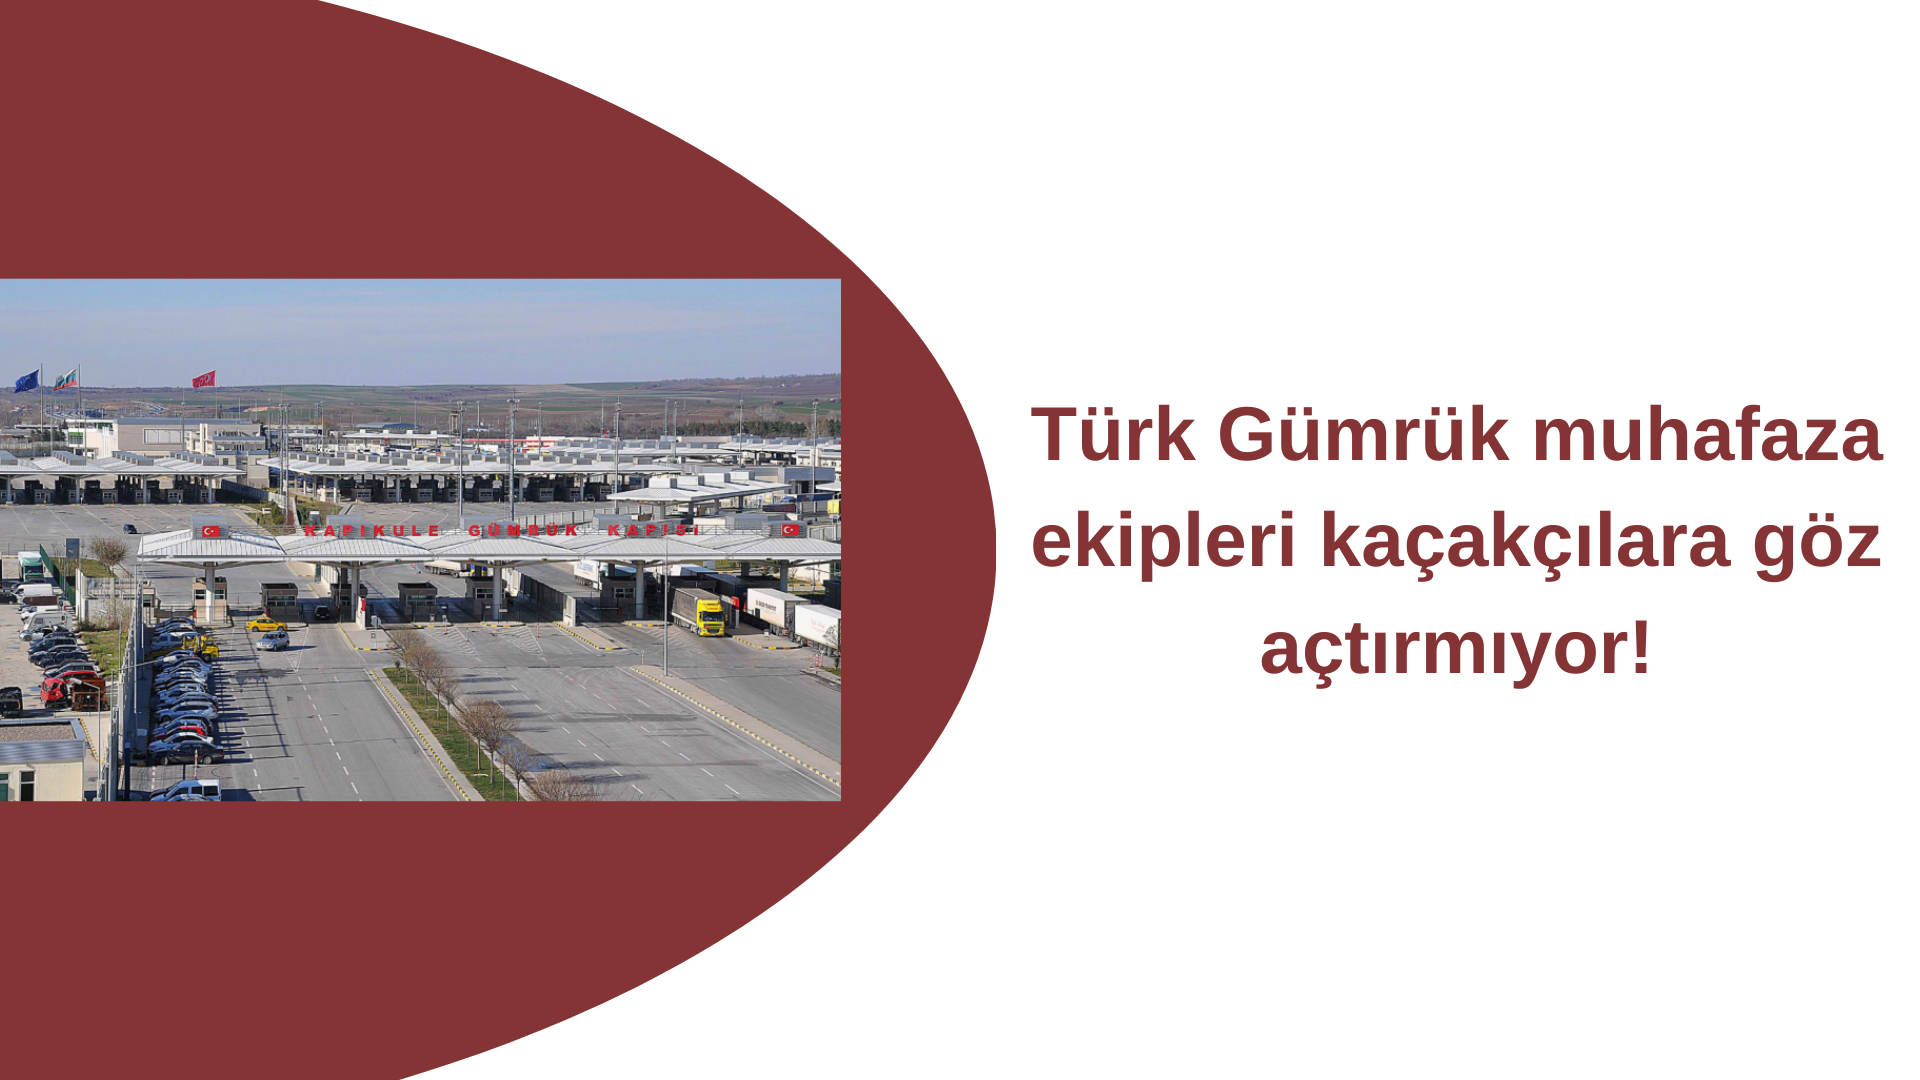 Türk Gümrük muhafaza ekipleri kaçakçılara göz açtırmıyor